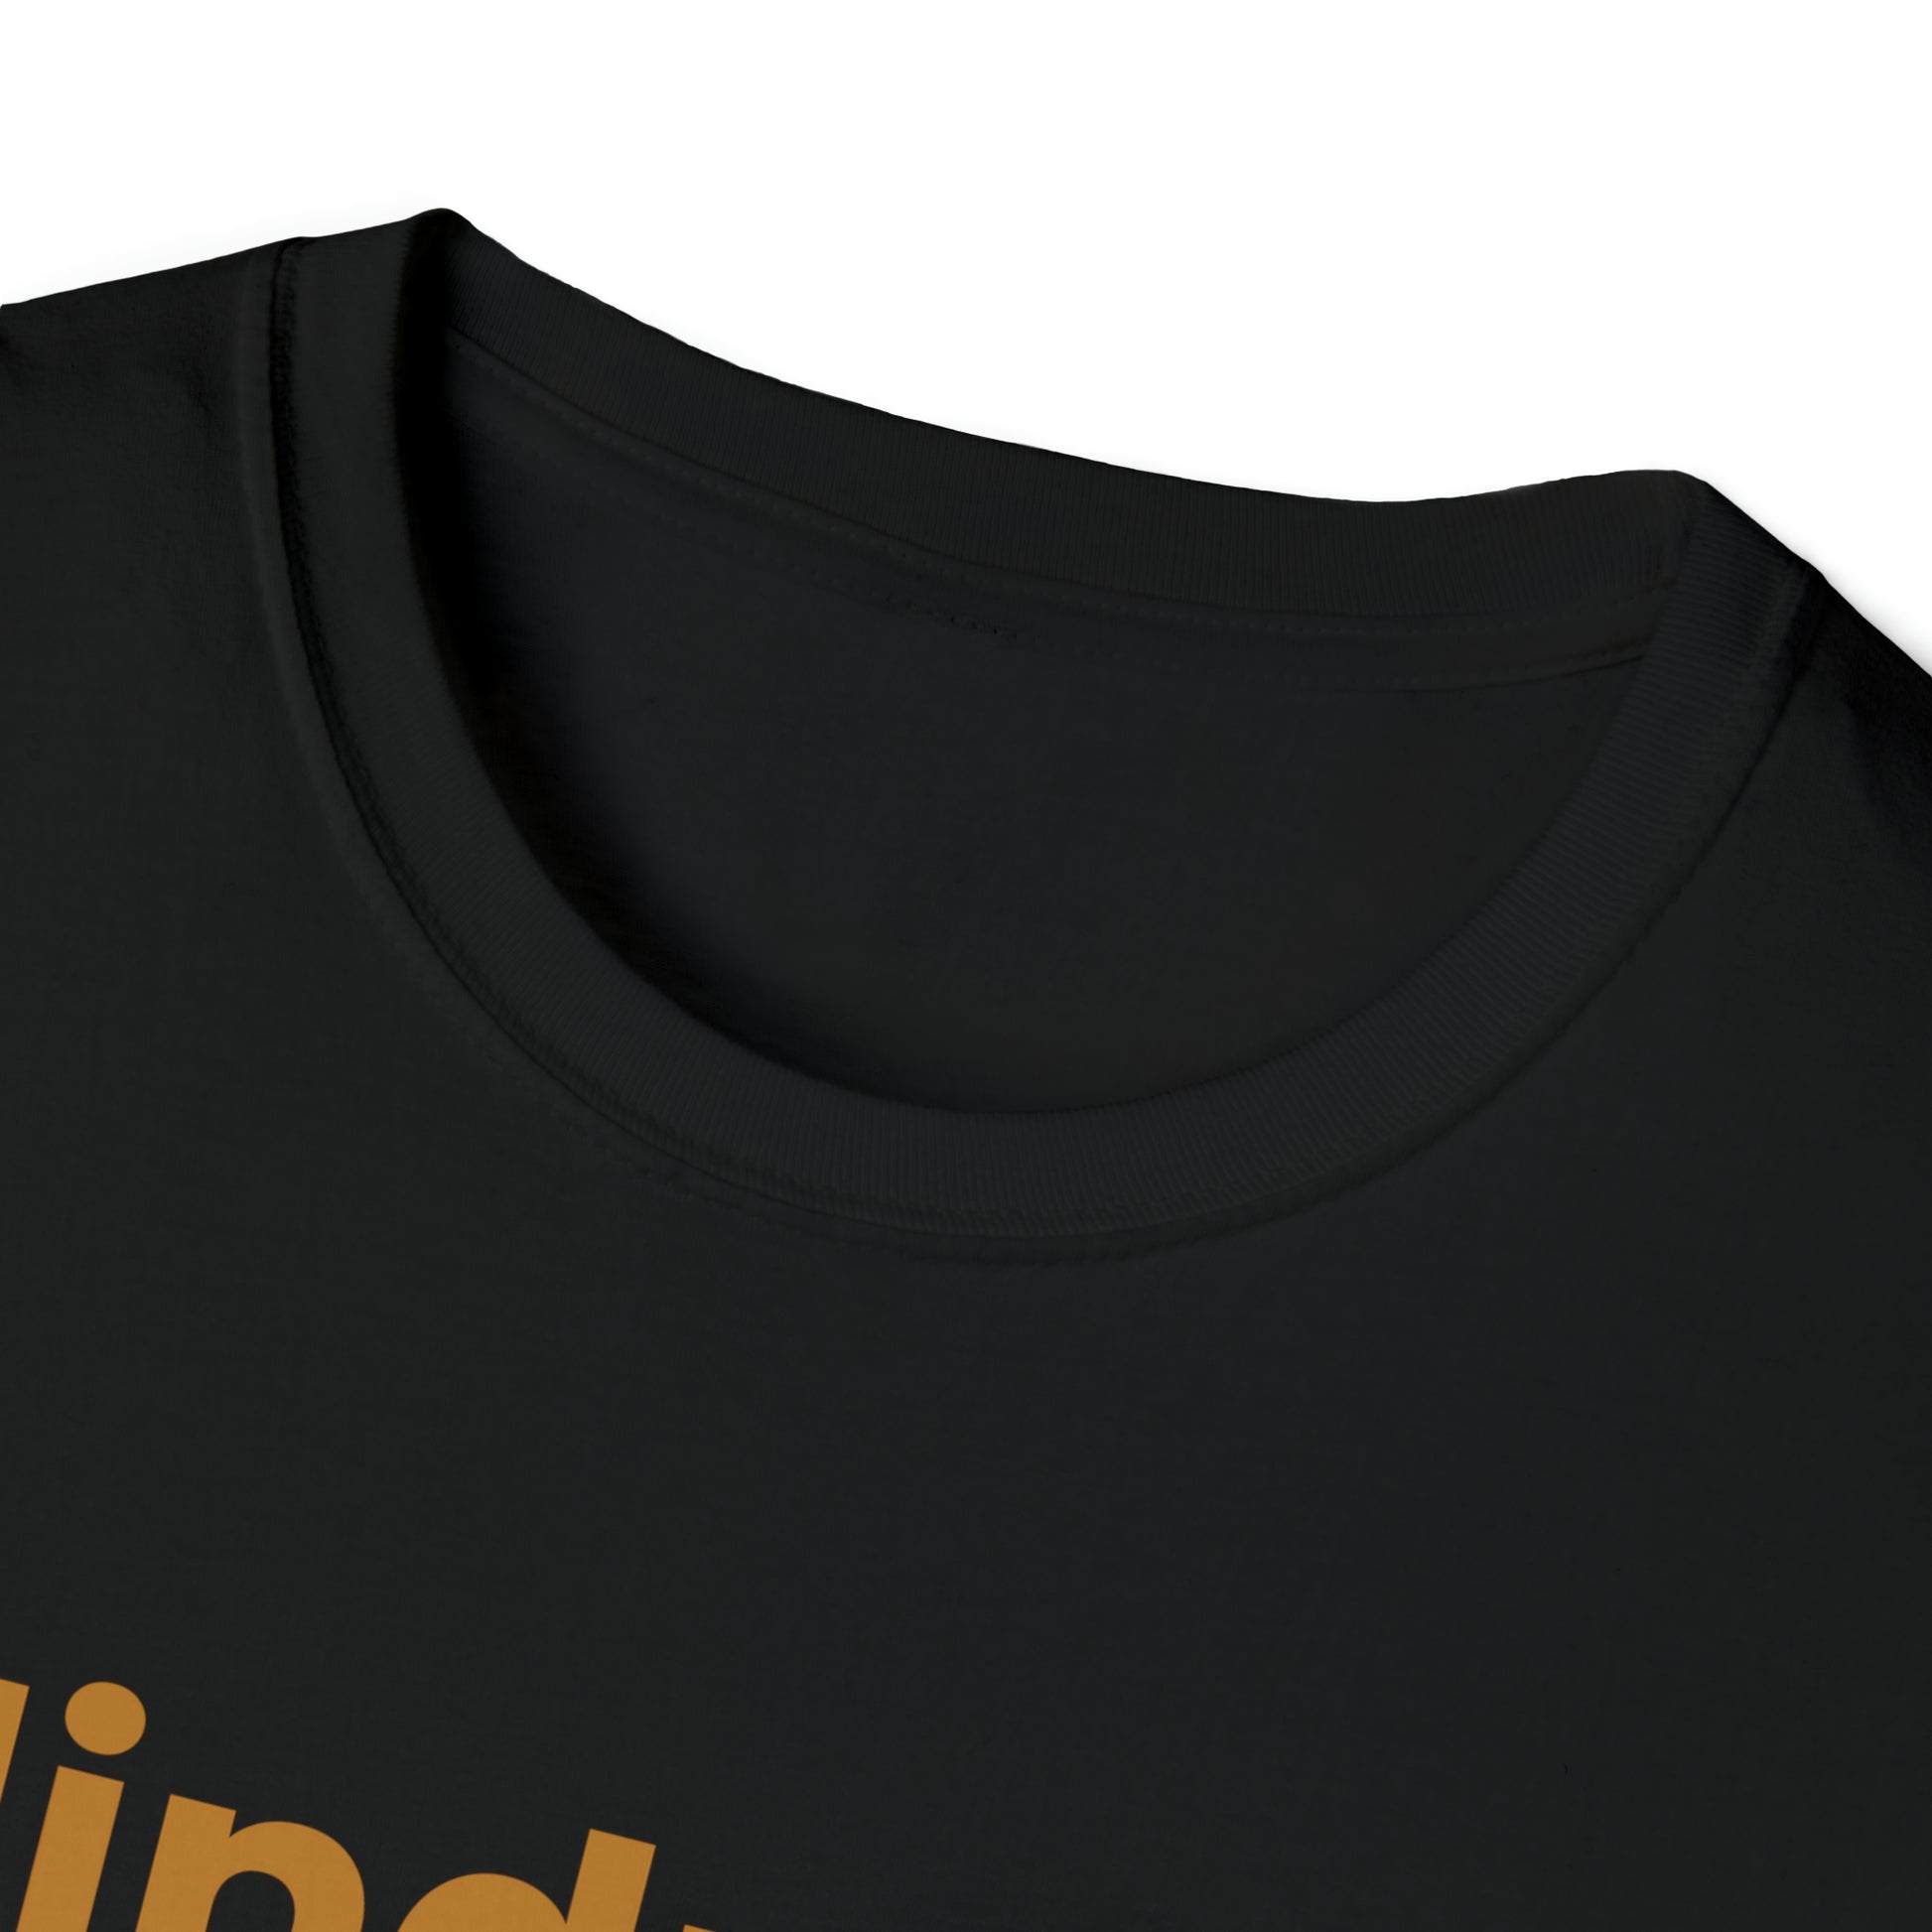 Blindness is a spectrum Robin bird- Unisex Softstyle T-Shirt